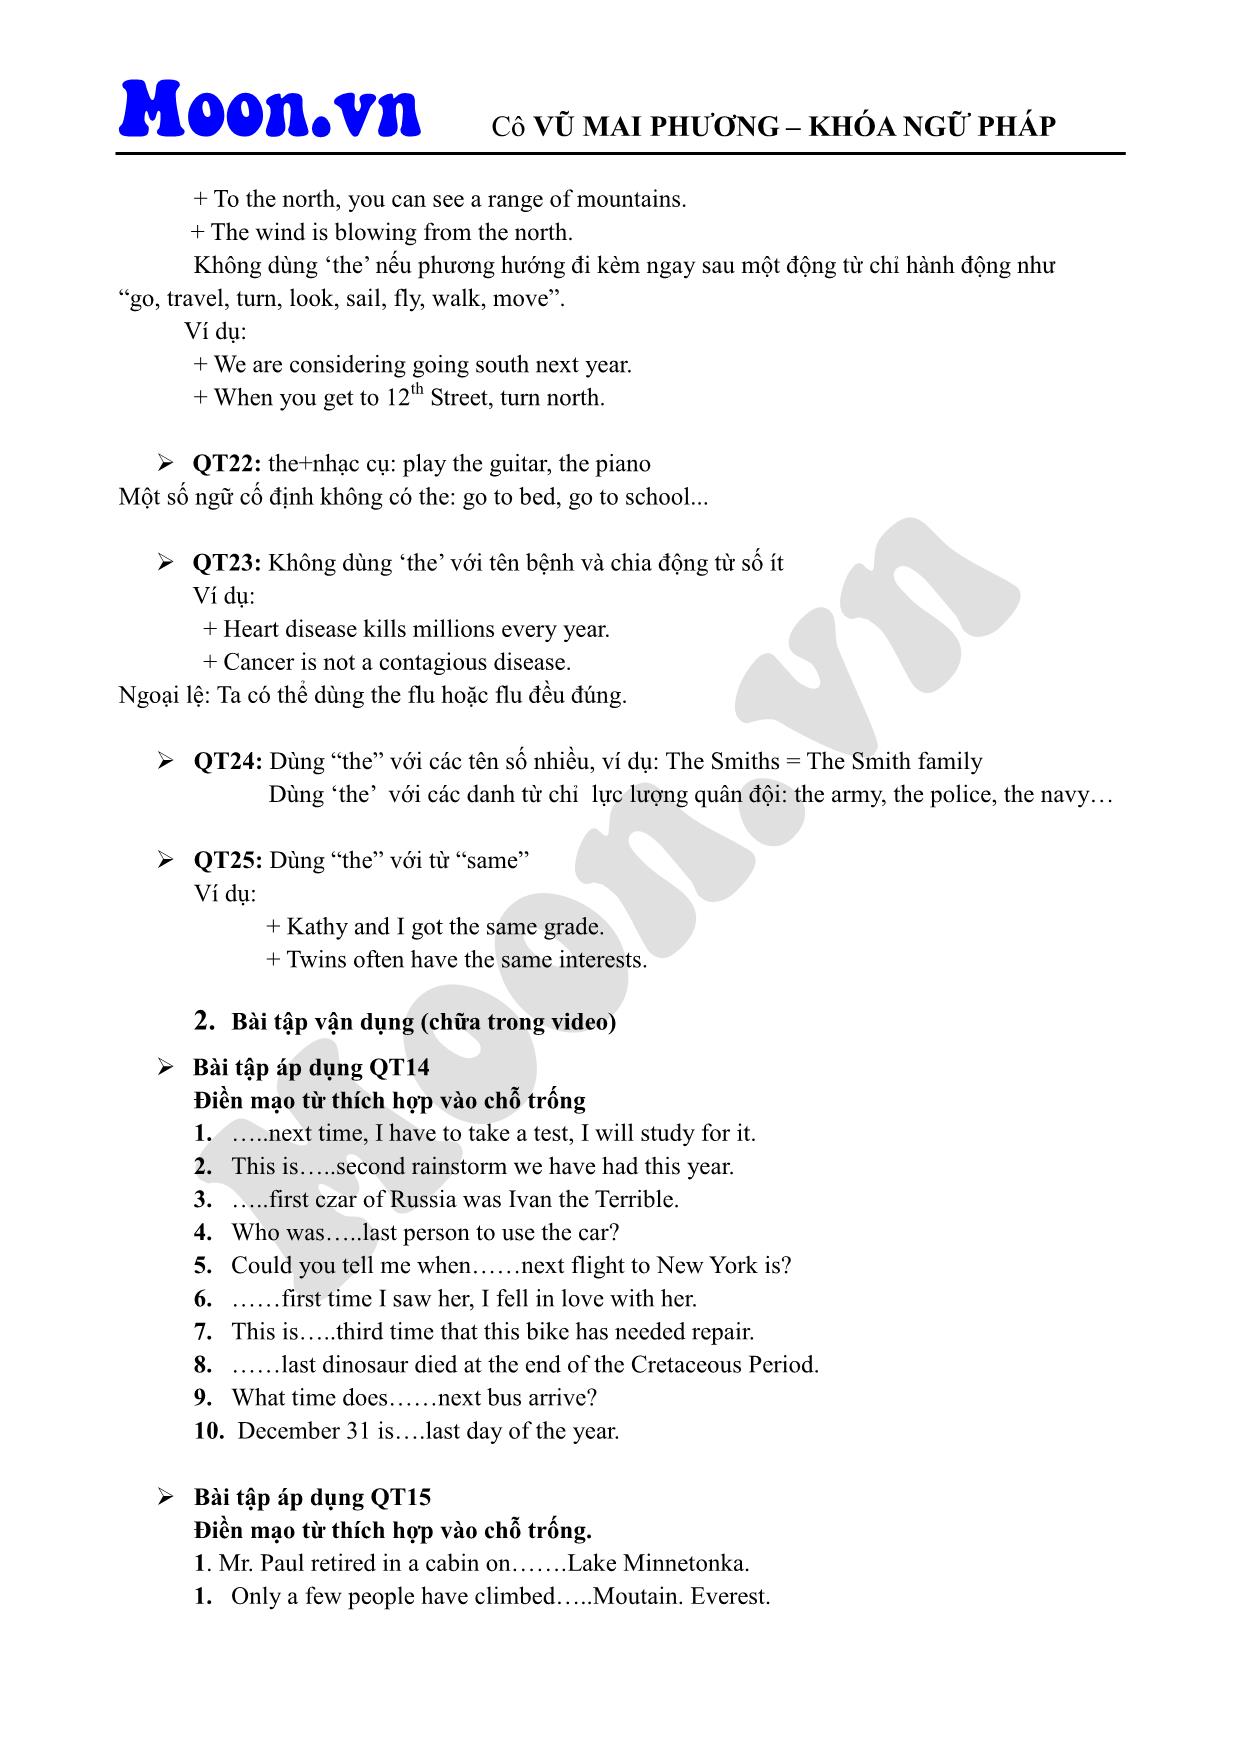 Giáo trình Tiếng Anh - Mạo từ (Phần 3) trang 2